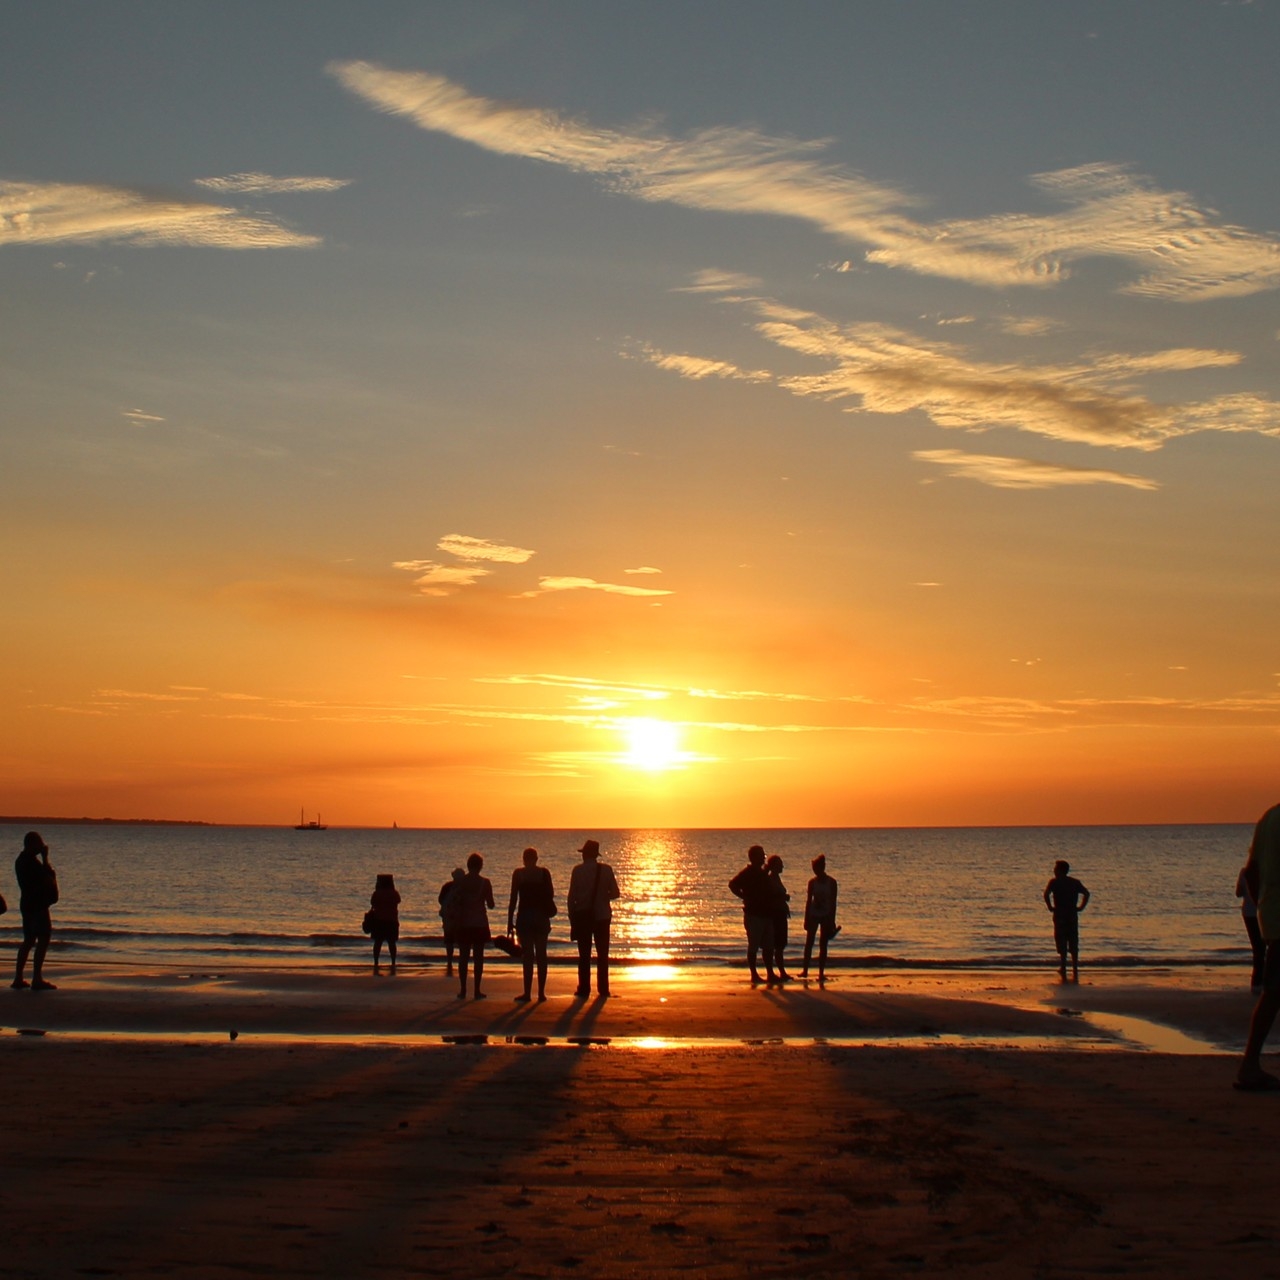 北领地，达尔文市，明迪尔海滩日落景象 © Aude Mayans/北领地旅游局版权所有